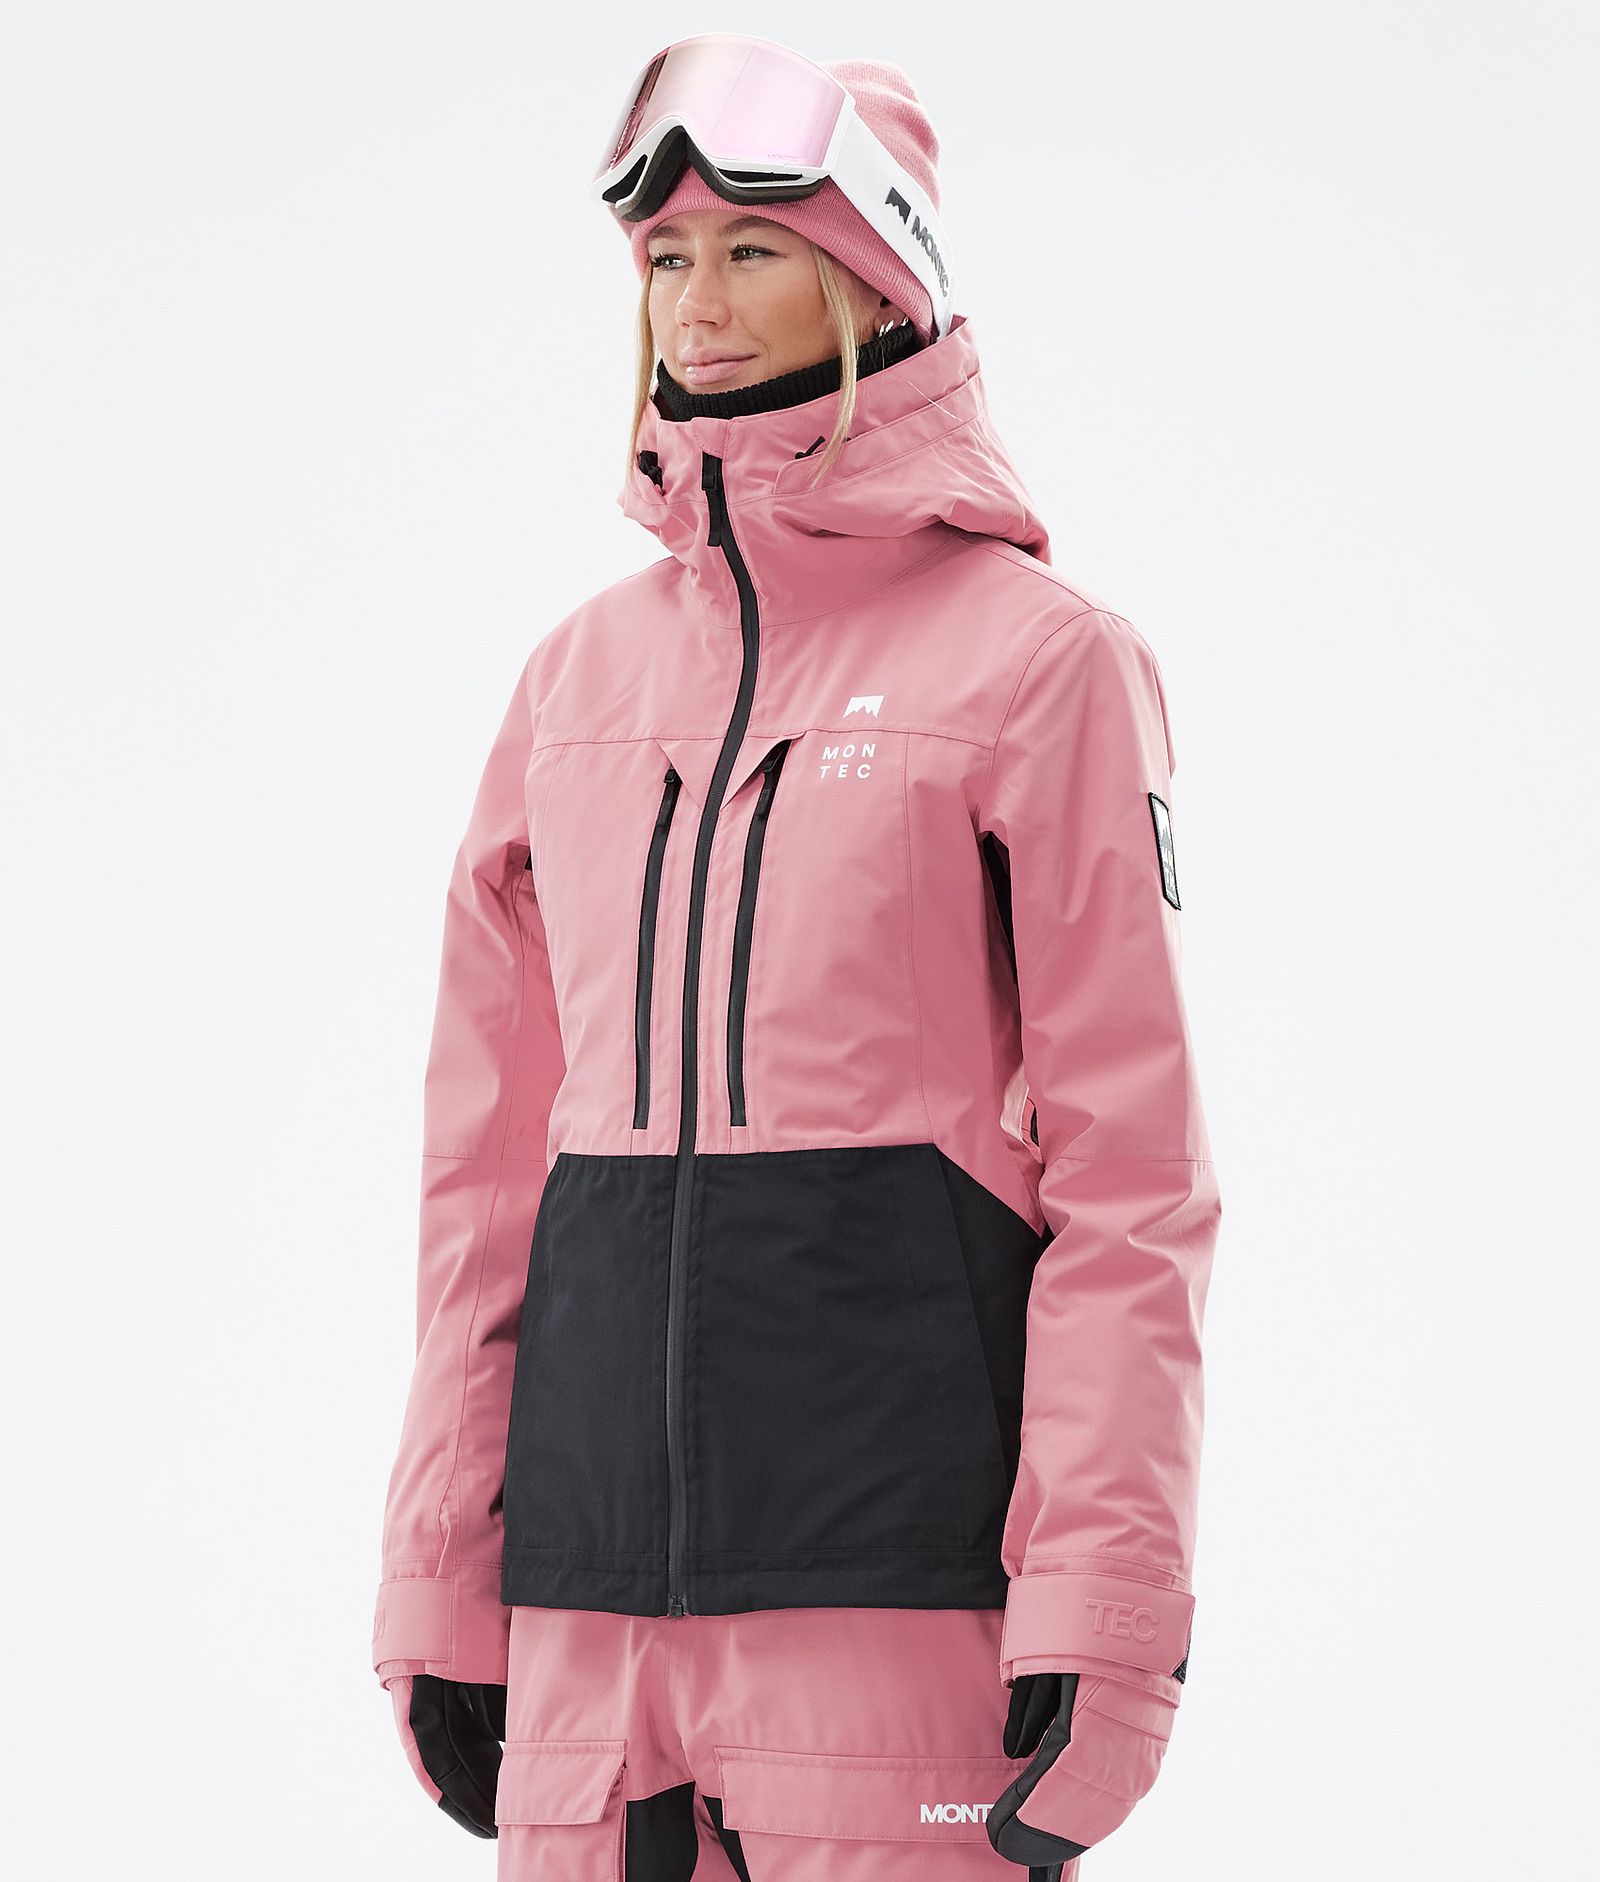 Moss W Veste Snowboard Femme Pink/Black, Image 1 sur 10